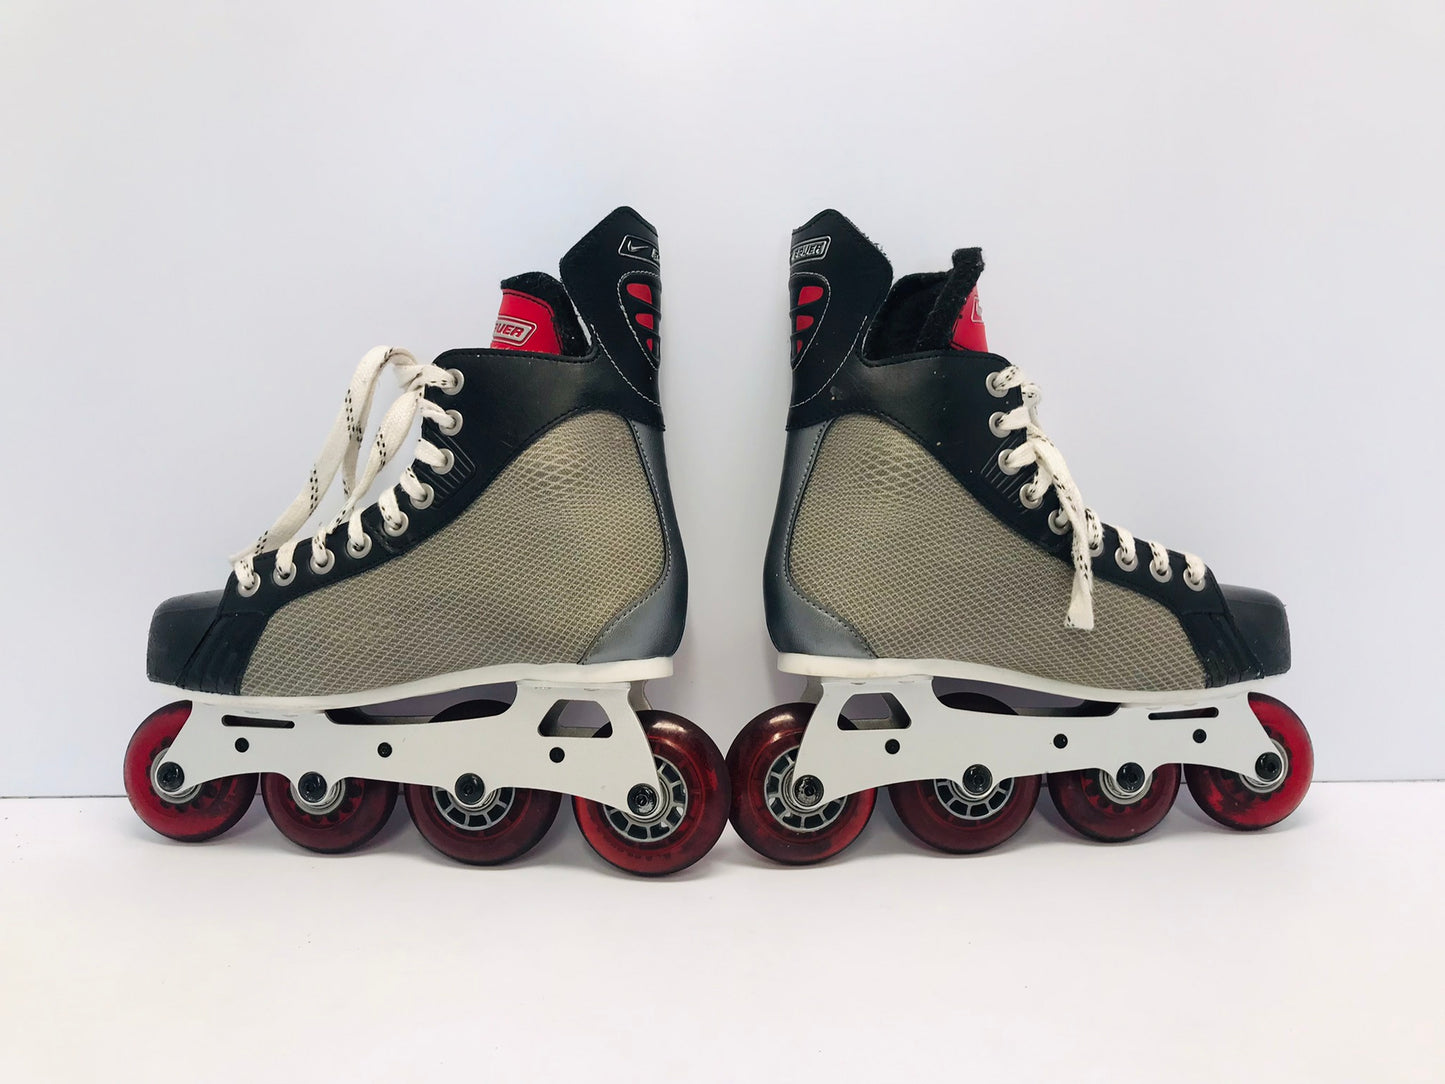 Hockey Roller Hockey Skates Mens Shoe Size 6.5-7 Bauer Supreme Nike Excellent